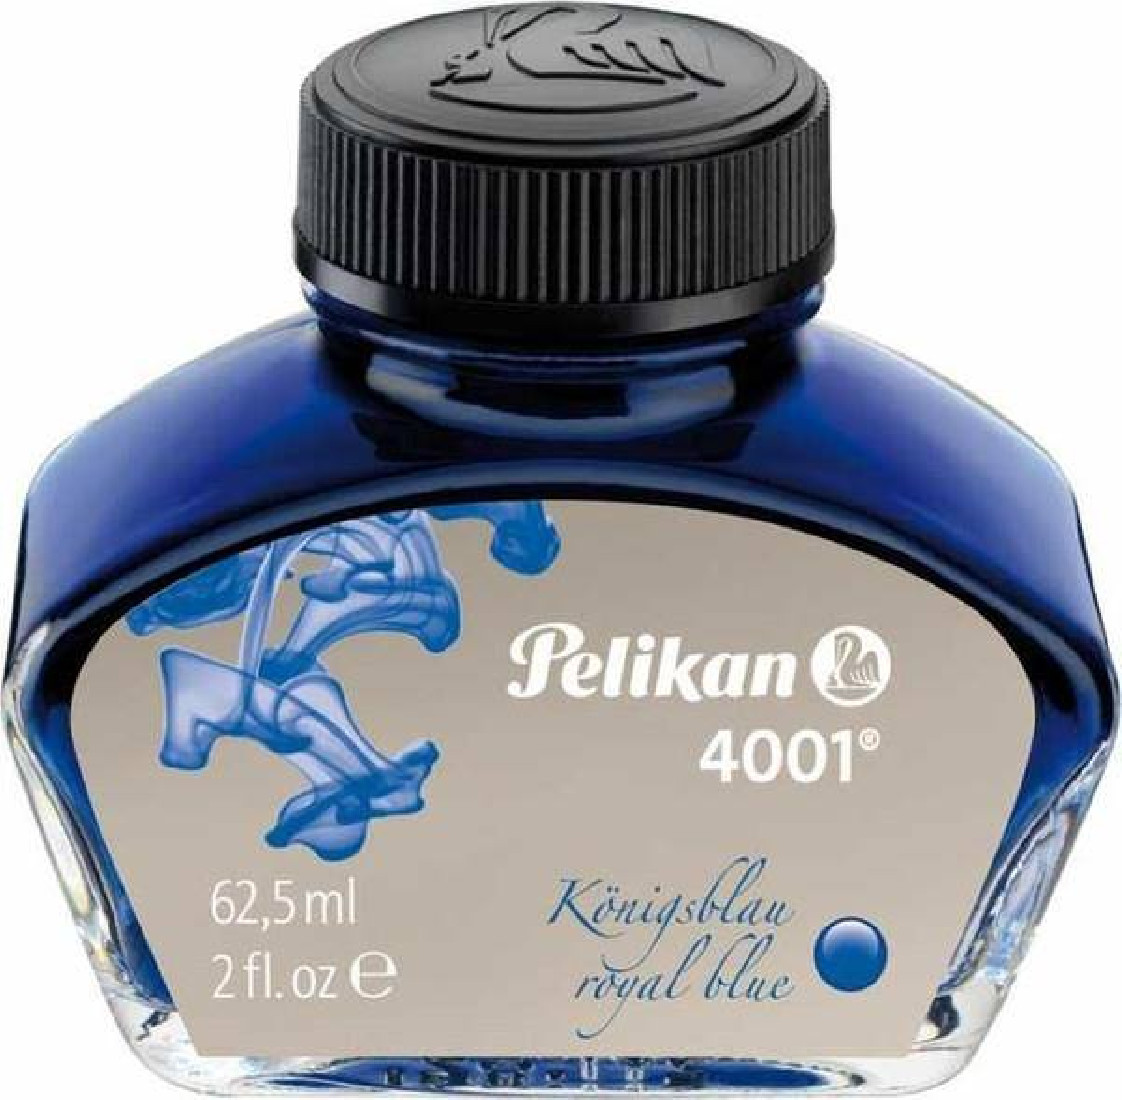 Pelikan 4001 Royal Blue 62,5ml  Fountain pen ink